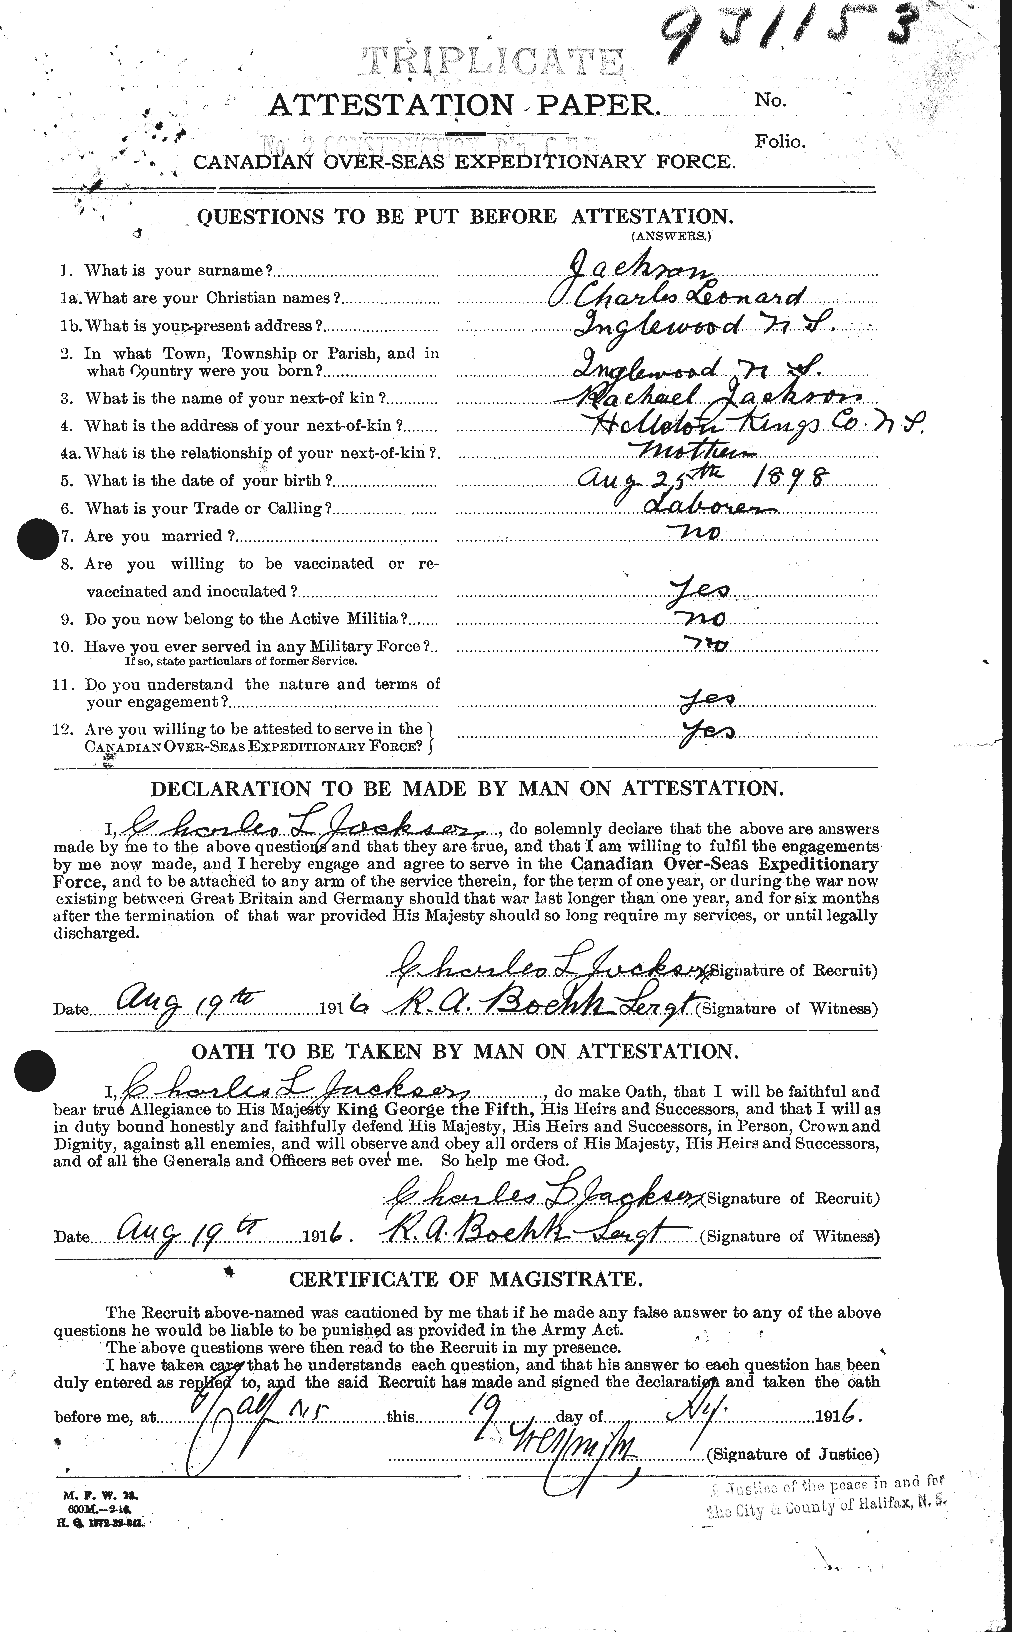 Dossiers du Personnel de la Première Guerre mondiale - CEC 411827a